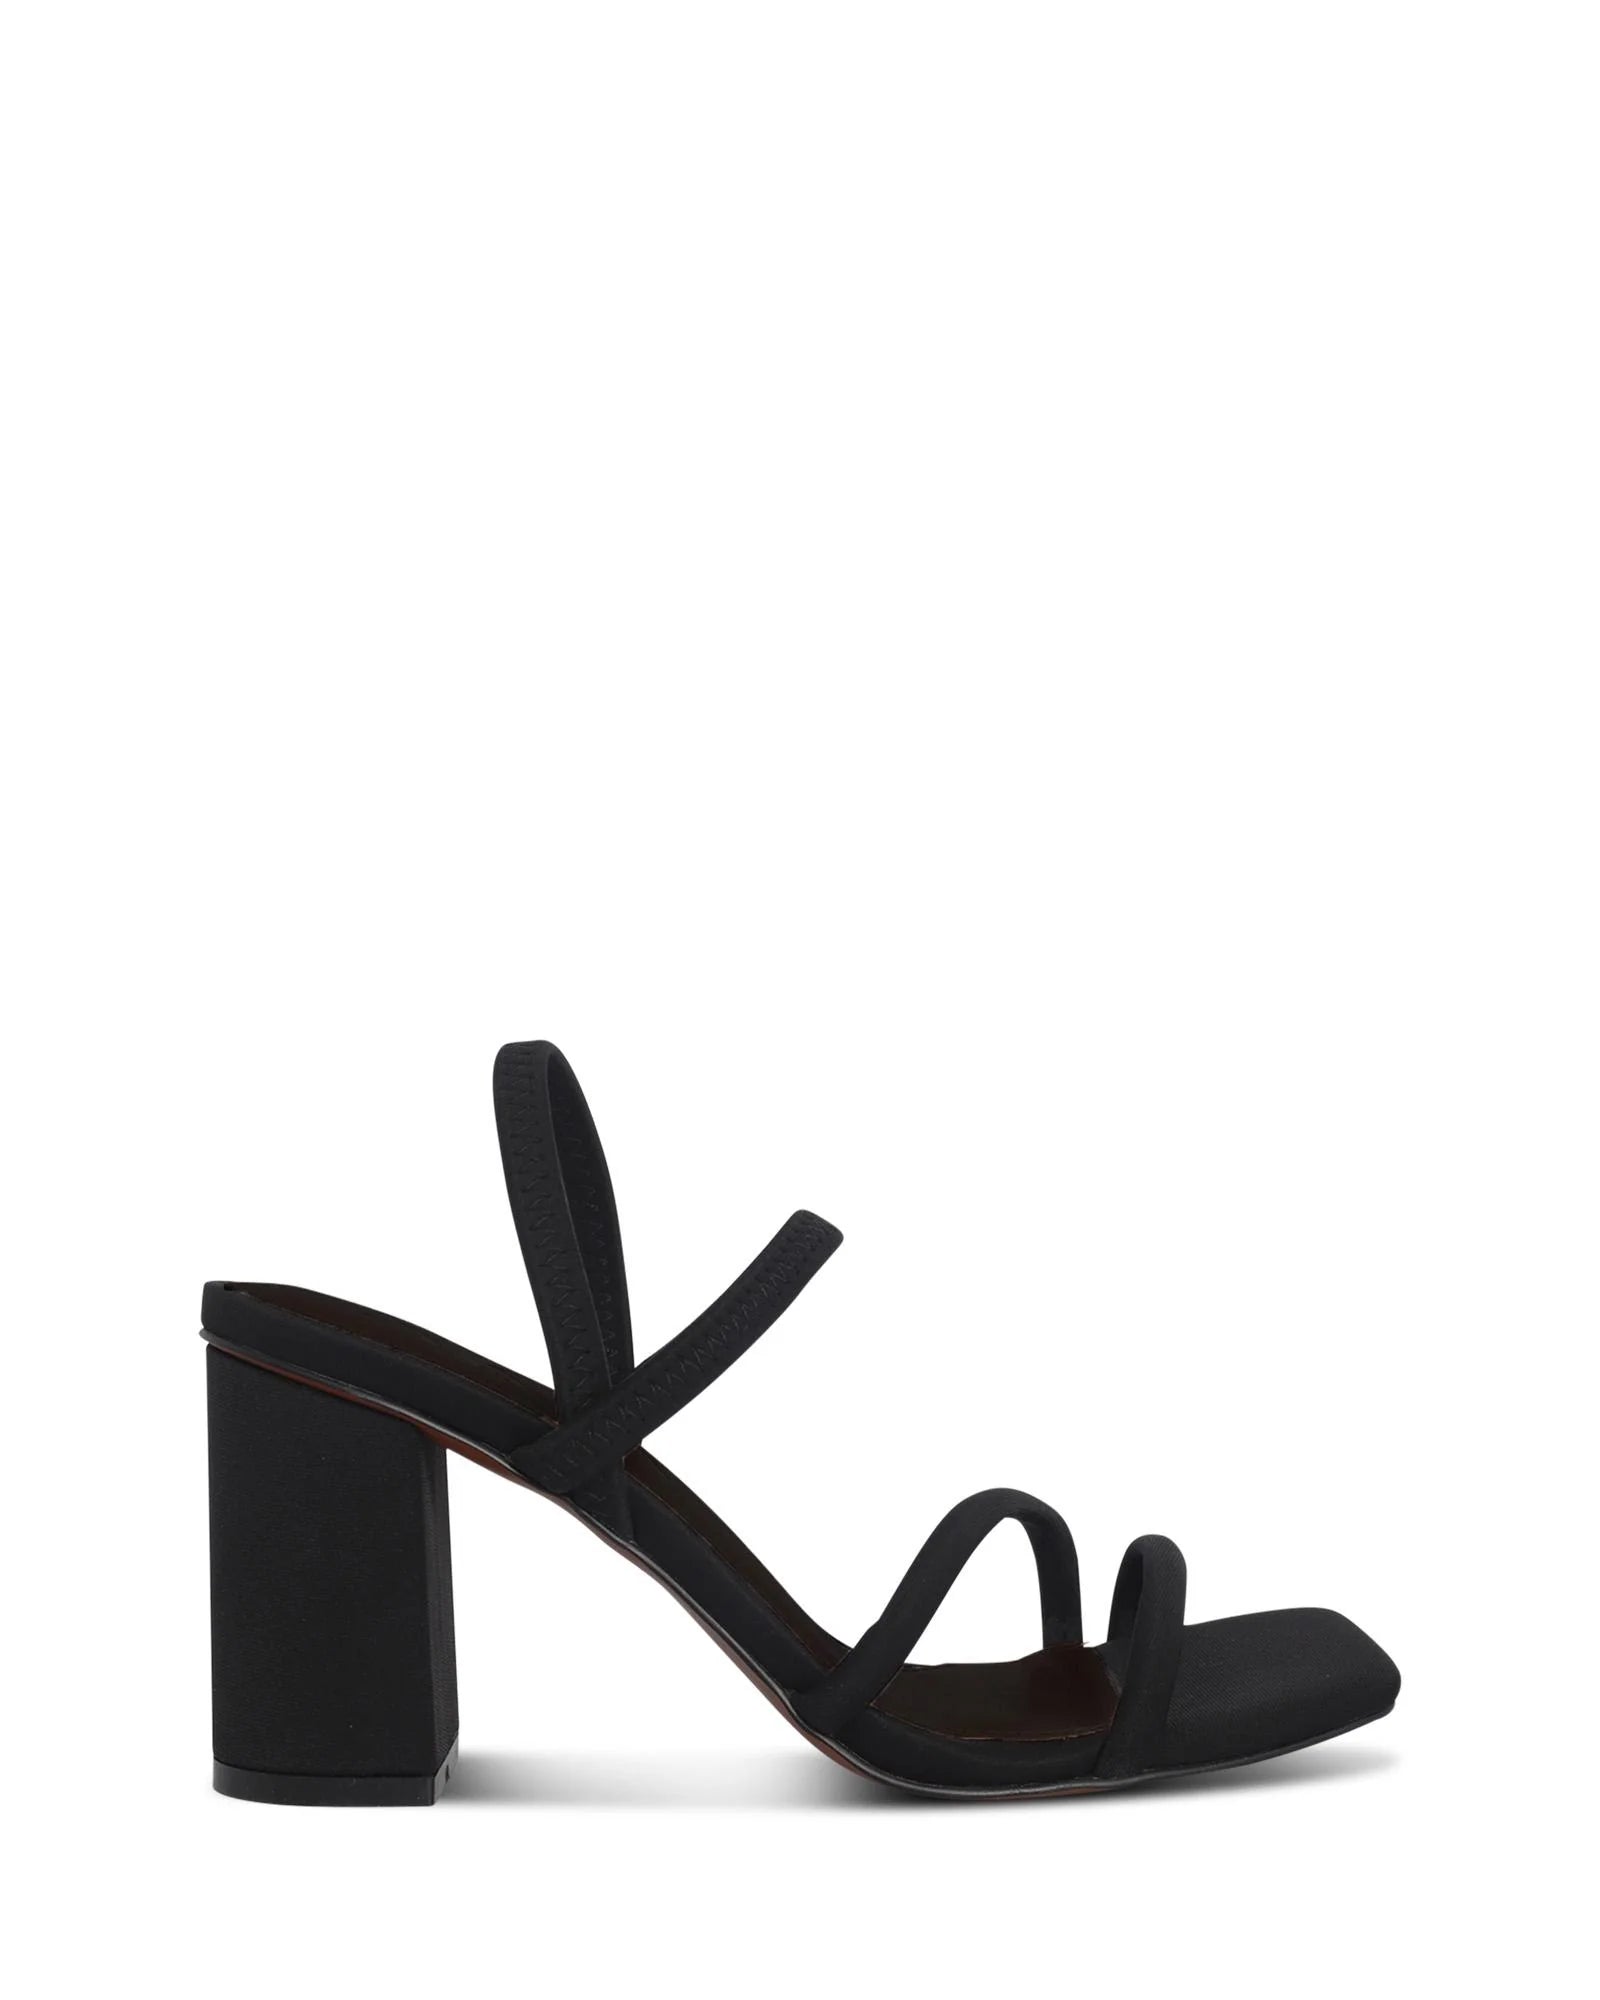 COLOMBO STRAPPY BLOCK HEEL - SKIN FOOTWEAR - 36, 37, 38, 39, 40, 41, BF, BLACK, Nude, womens footwear - Stomp Shoes Darwin